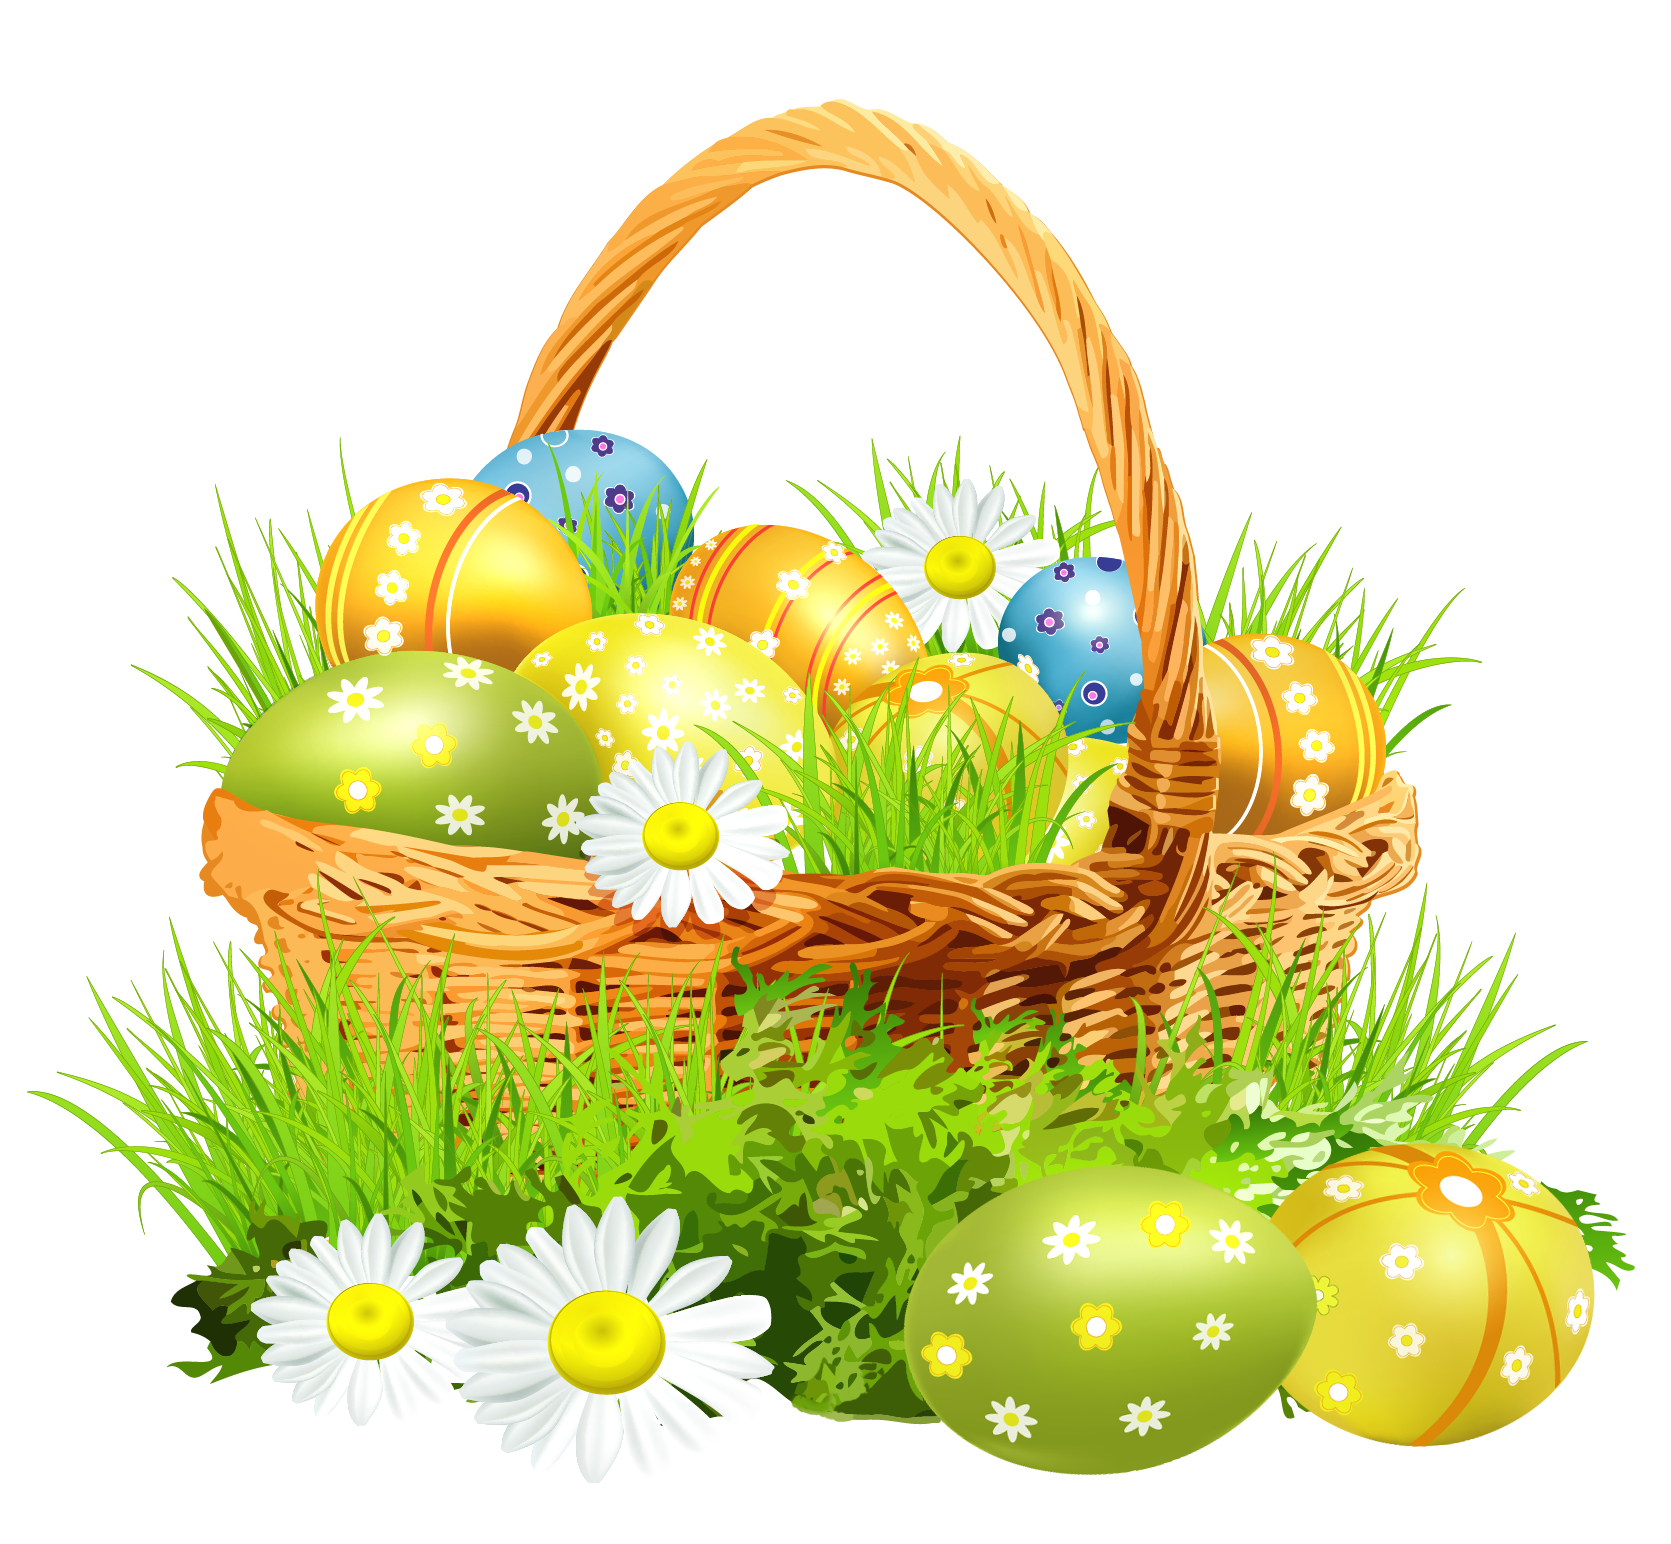 Transparent Easter Basket and